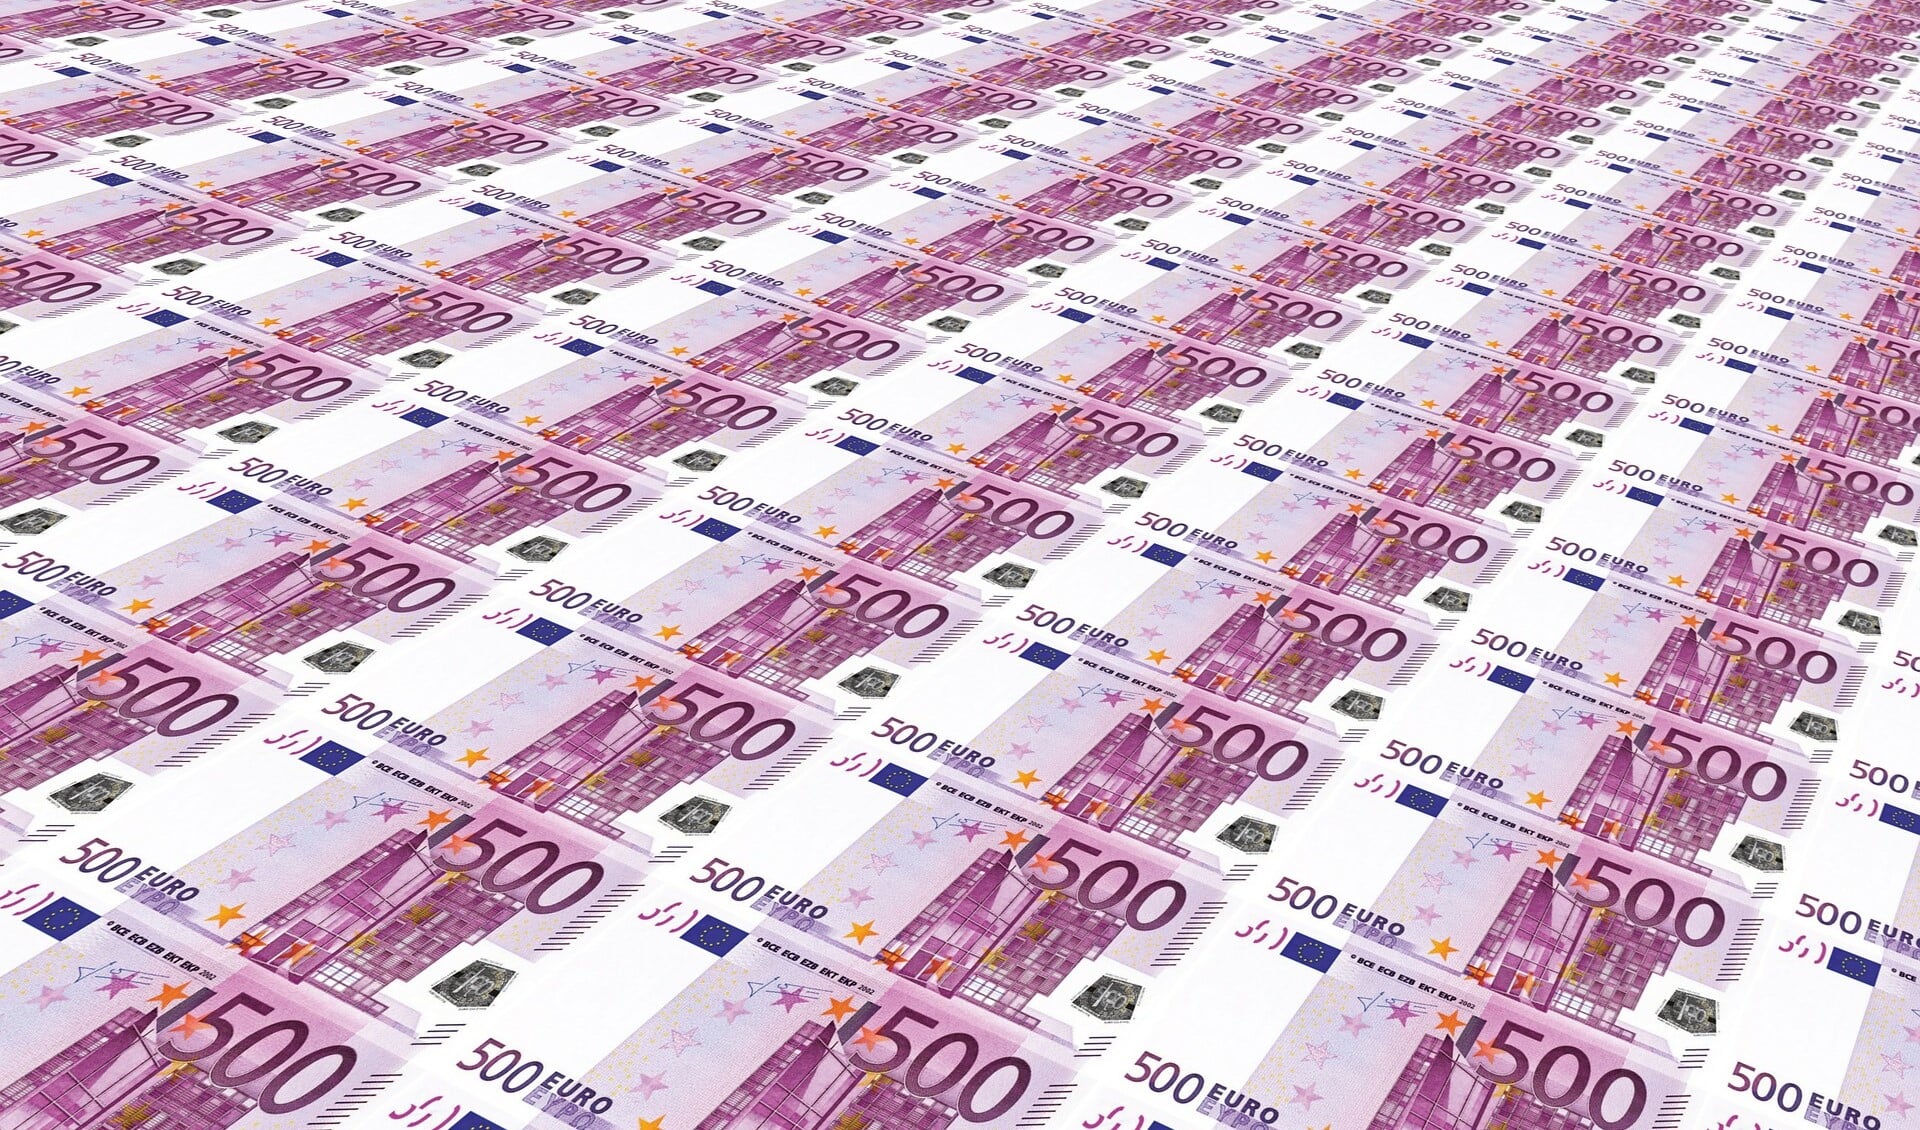 Biljetten van € 500 worden al niet meer uitgegeven door de bank.